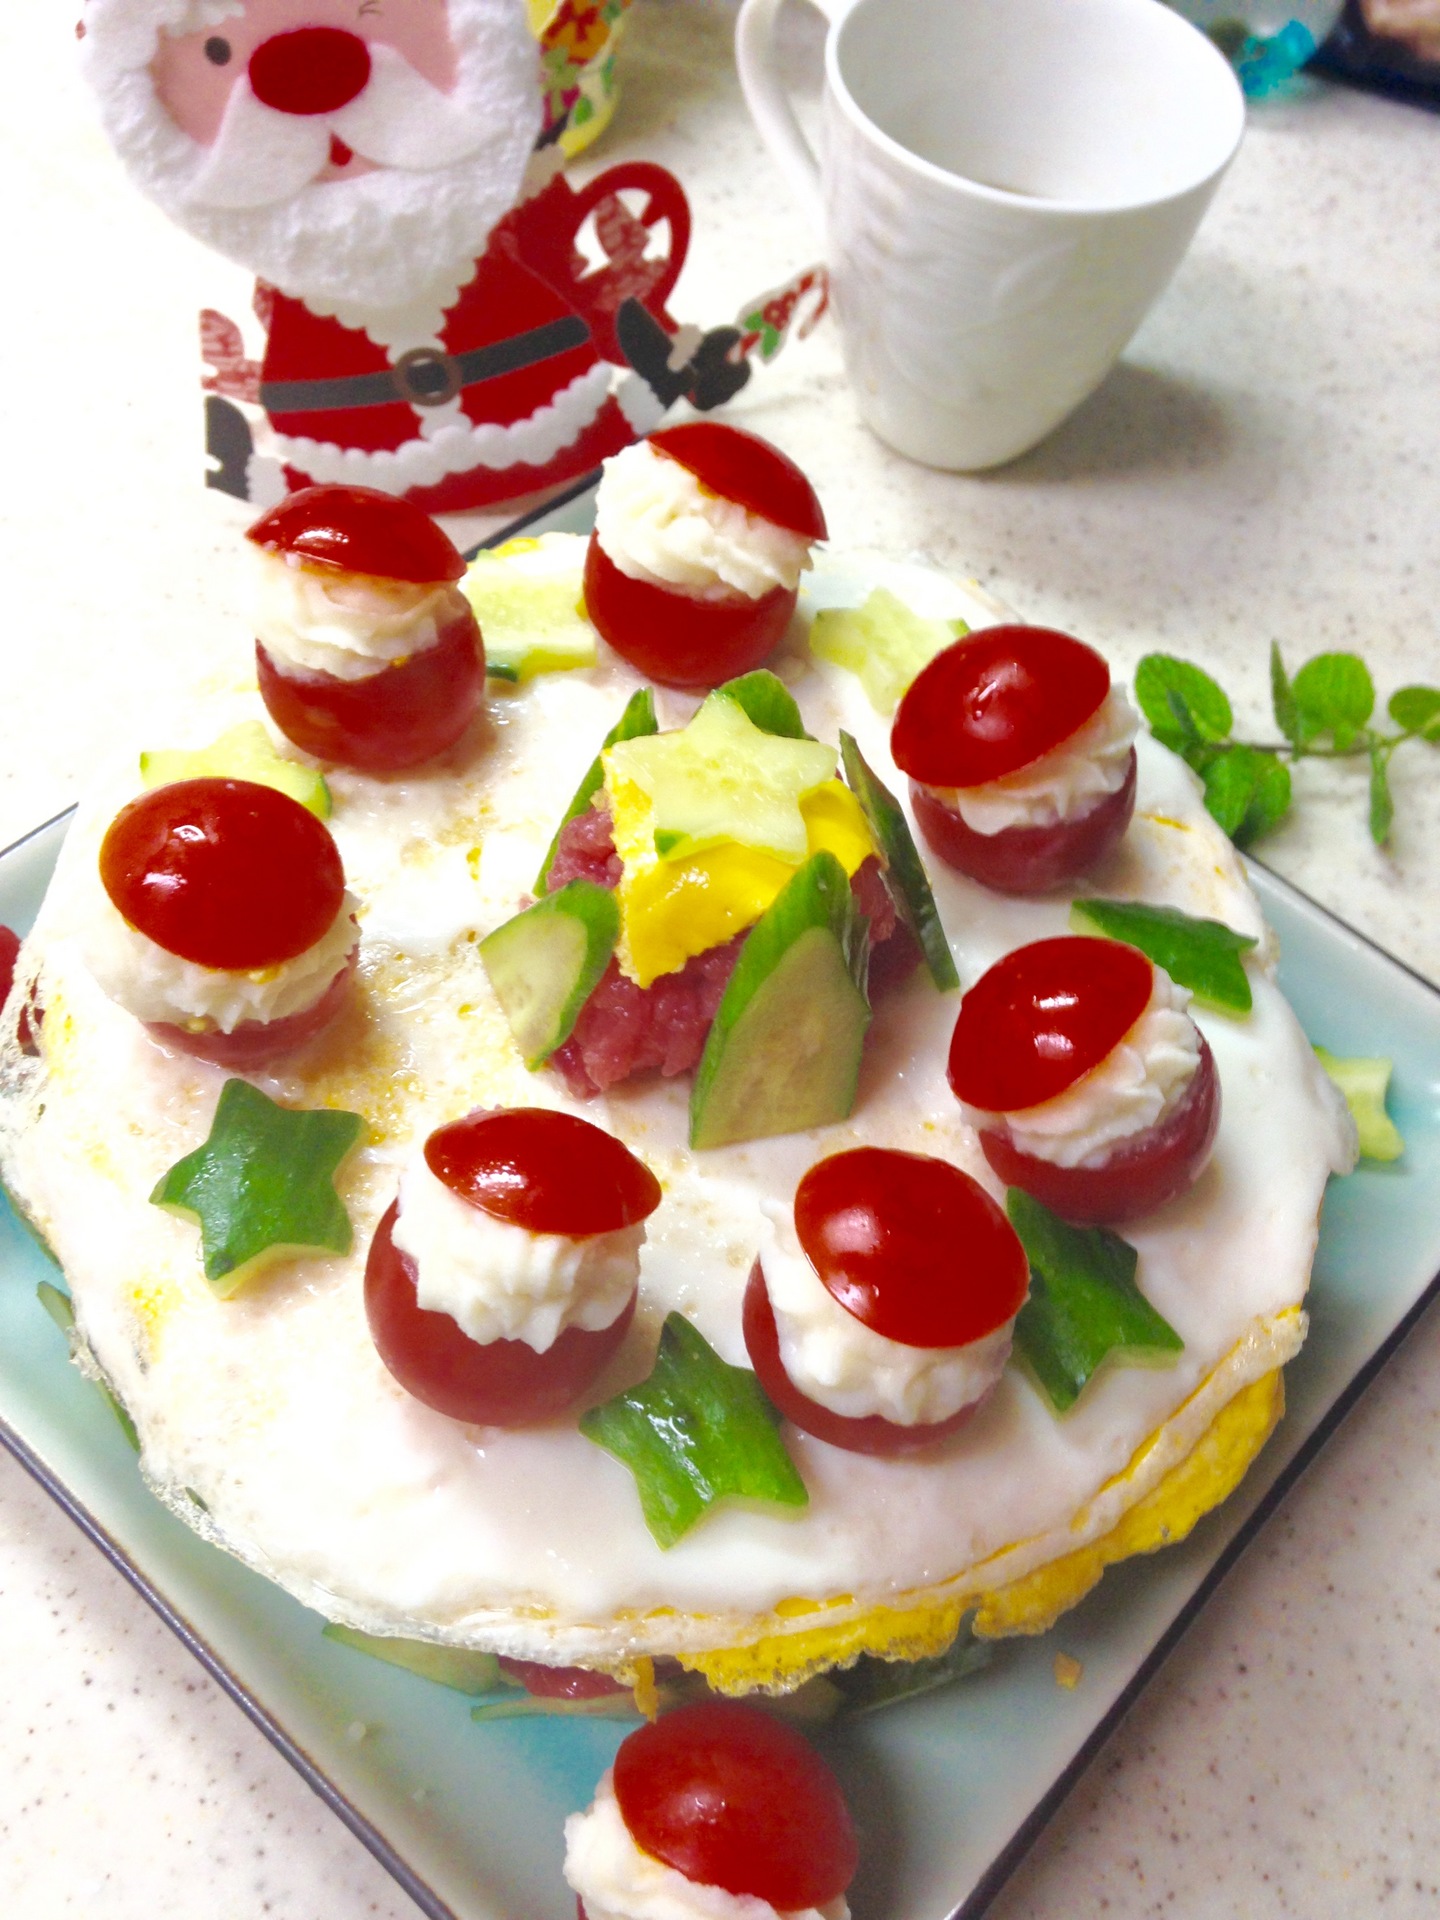 和みcafe うららかな午後 子どもと作るクリスマス寿司ケーキ